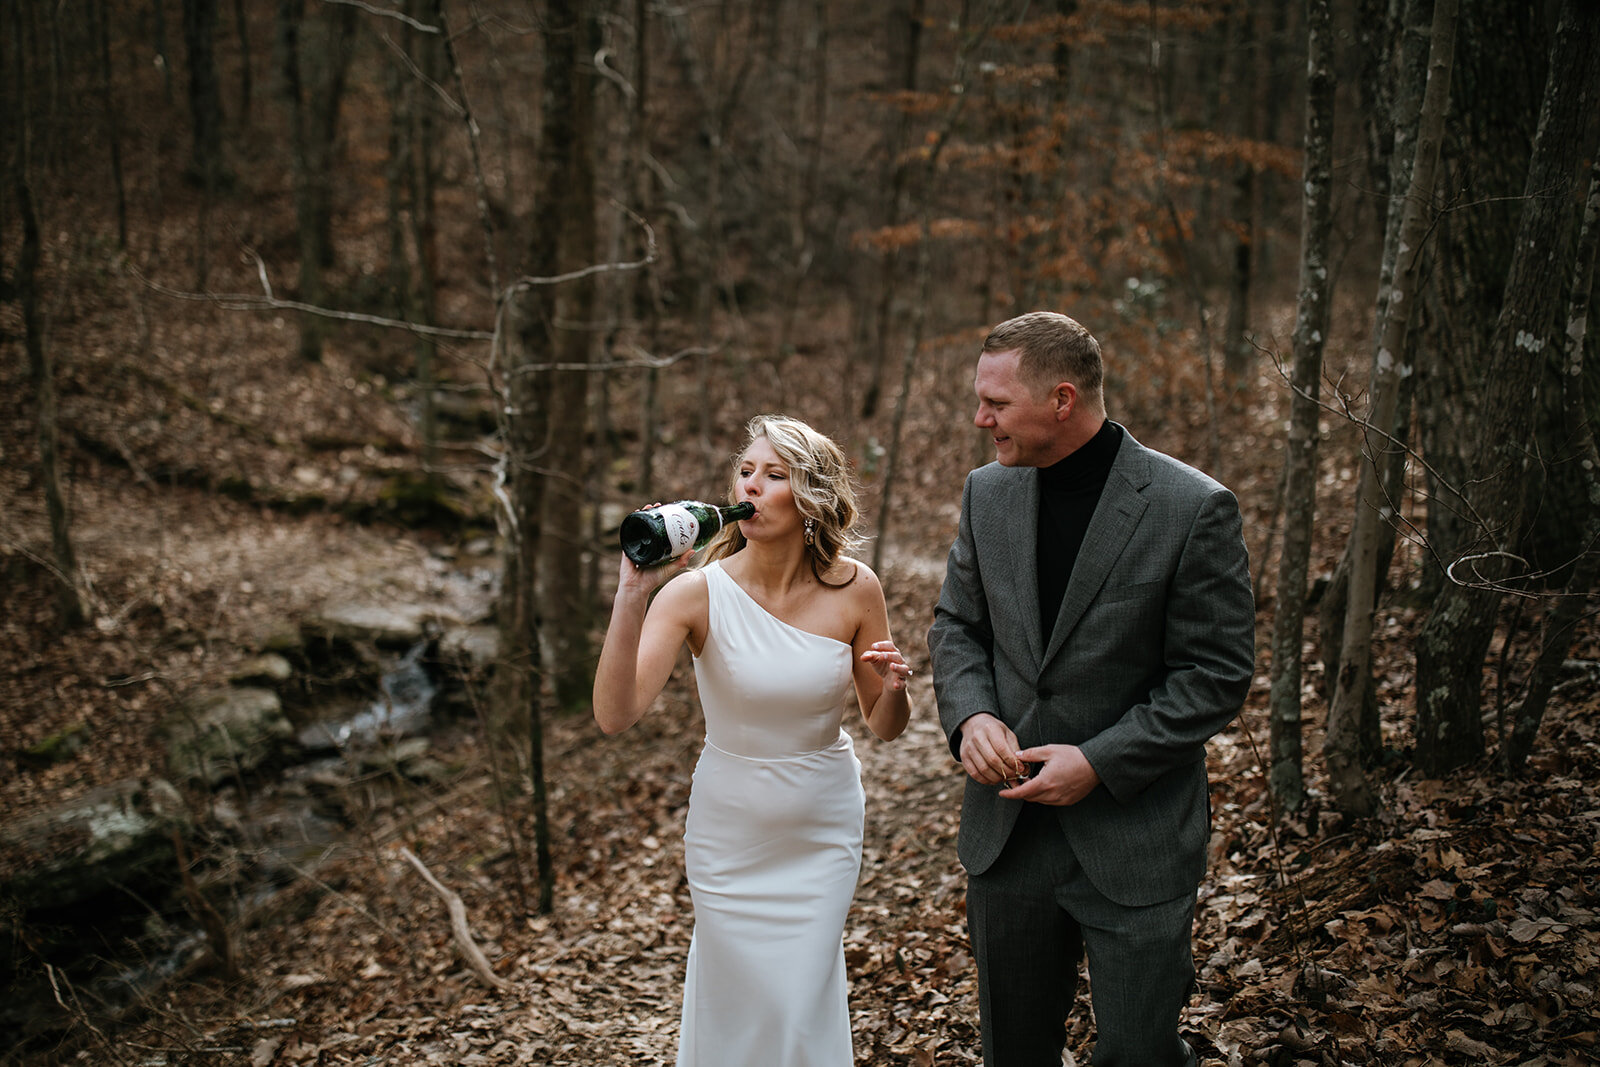 snoopers-rock-adventure-elopement-chattanooga-wedding-photographerfoster-falls-elopement-chattanooga-wedding-photographer-524_websize.jpg